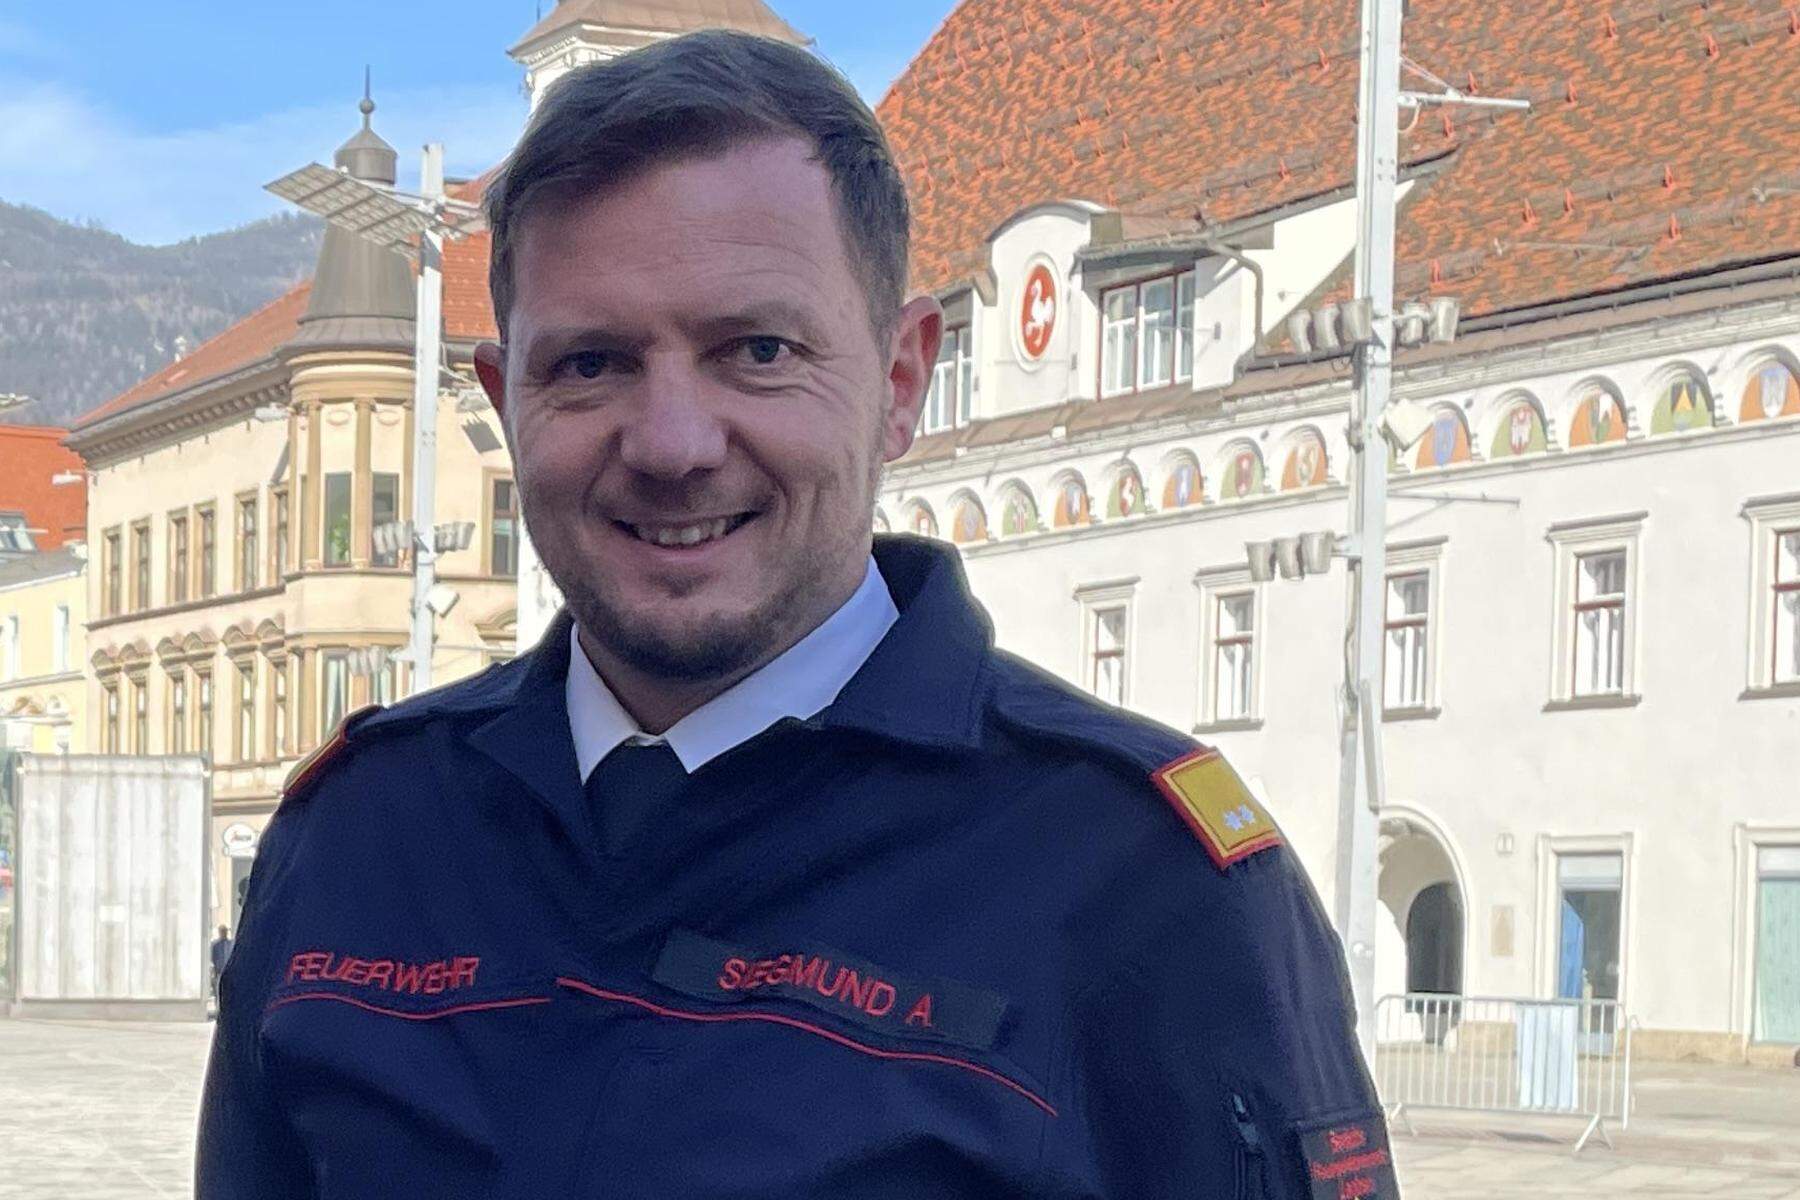 Wertvolle Feuerwehrarbeit: Arbeitsstunden der Florianis sind mehr als 22,8 Millionen Euro wert